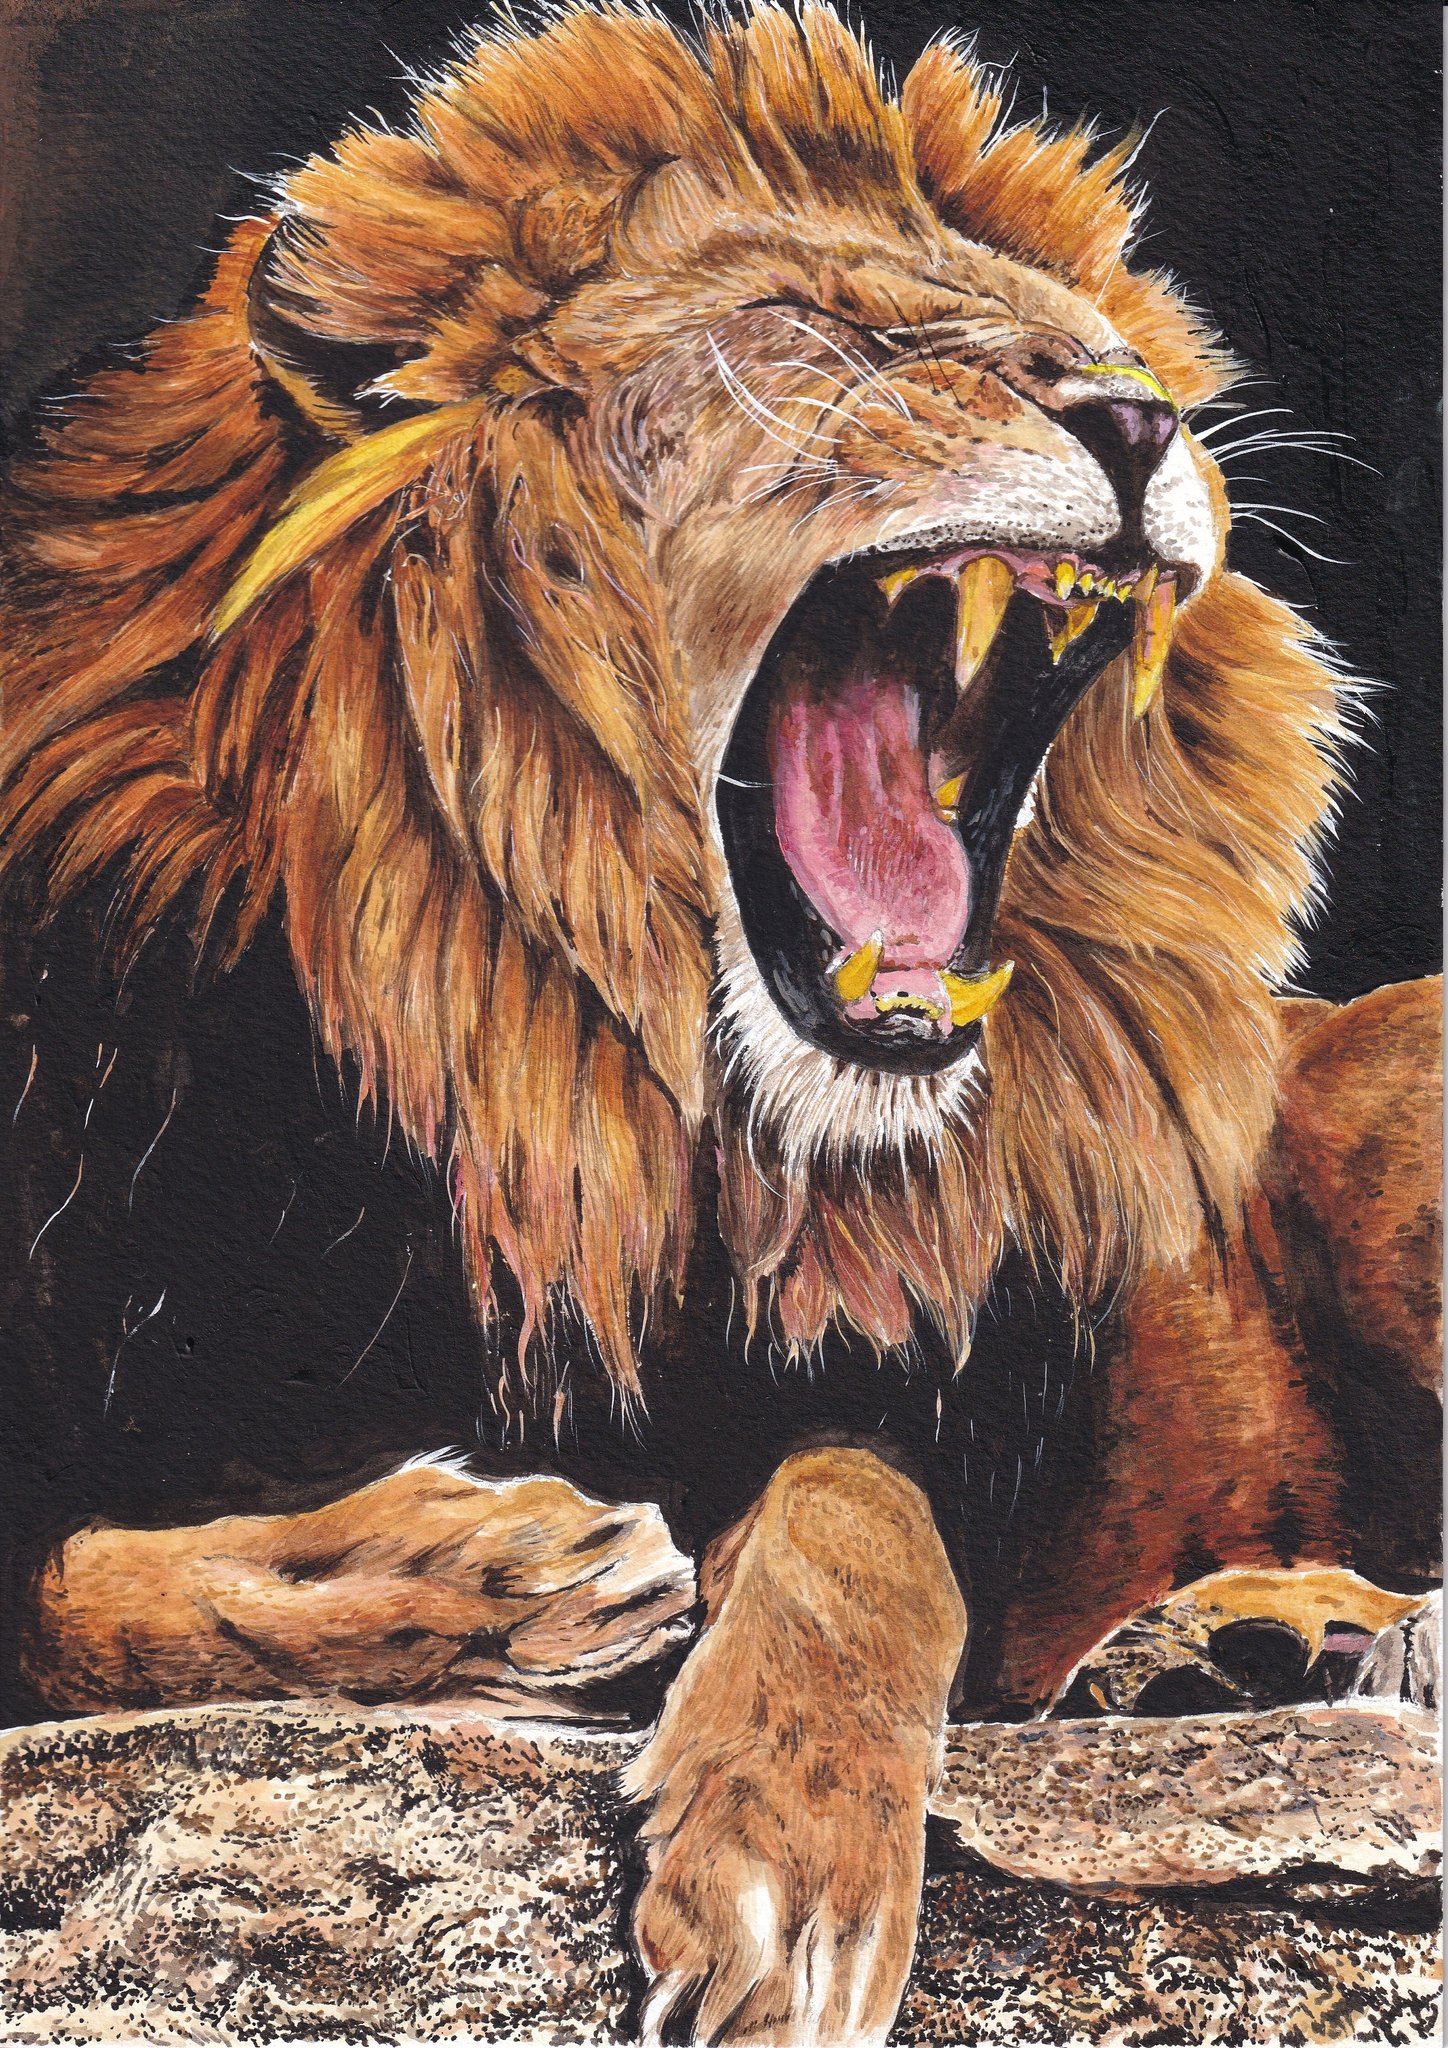 ケン アクリル絵の具でライオンを描きました Acrylic Painting Of The Lion アクリル画 アクリル絵の具 ライオン イラスト Acrylicpainting Acryliccolor Lion Illustration T Co Cyjxjtxavz Twitter